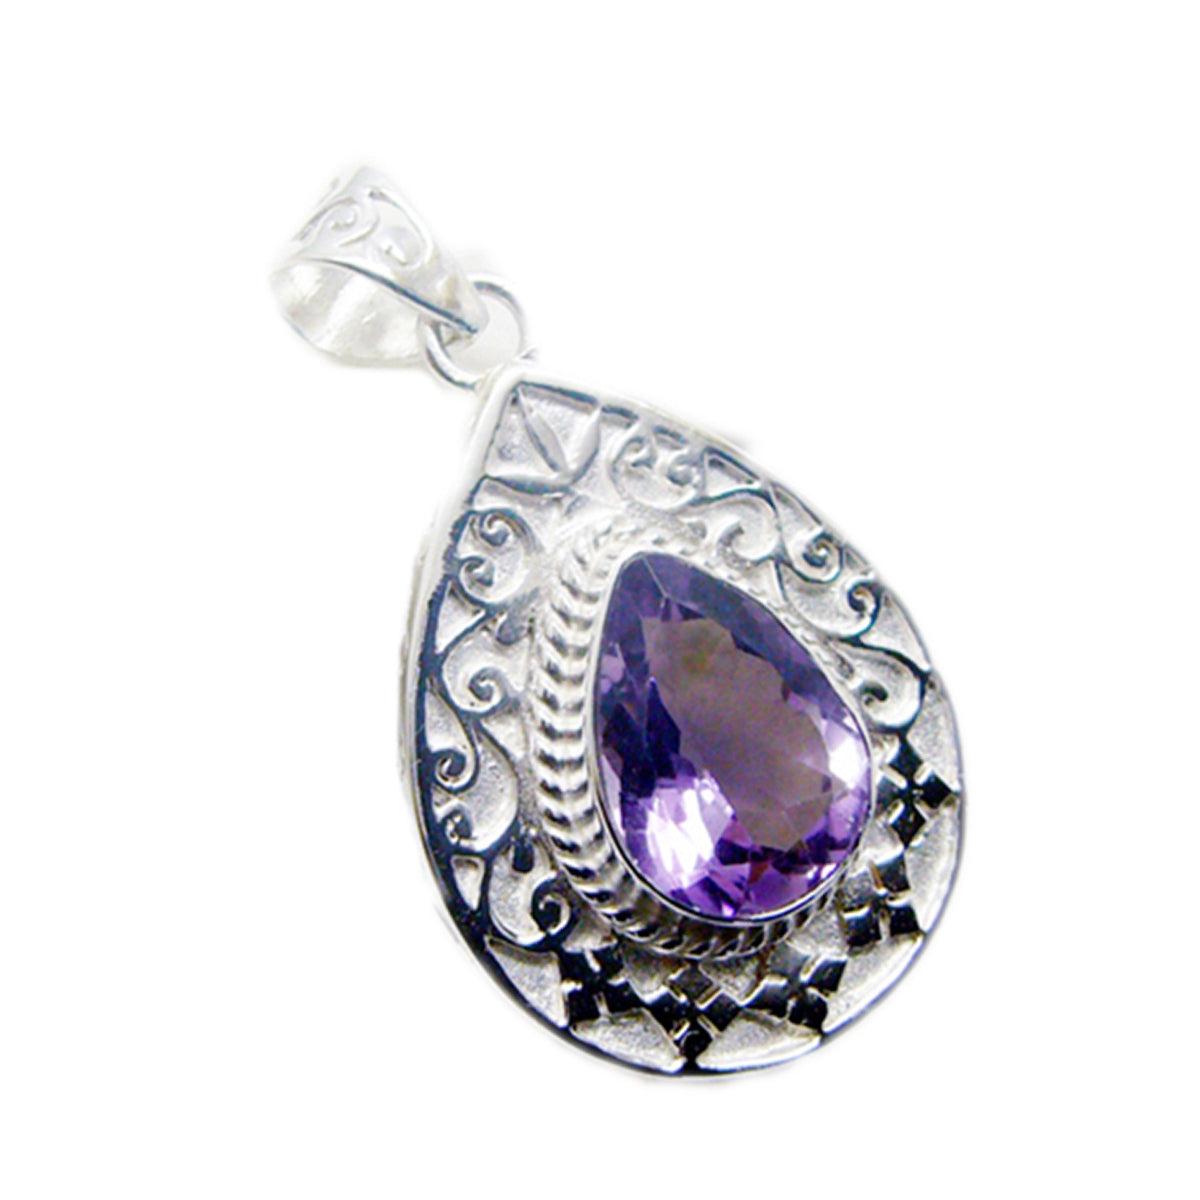 Riyo hechizante piedra preciosa pera facetada amatista púrpura colgante de plata de ley 1001 regalo para cumpleaños